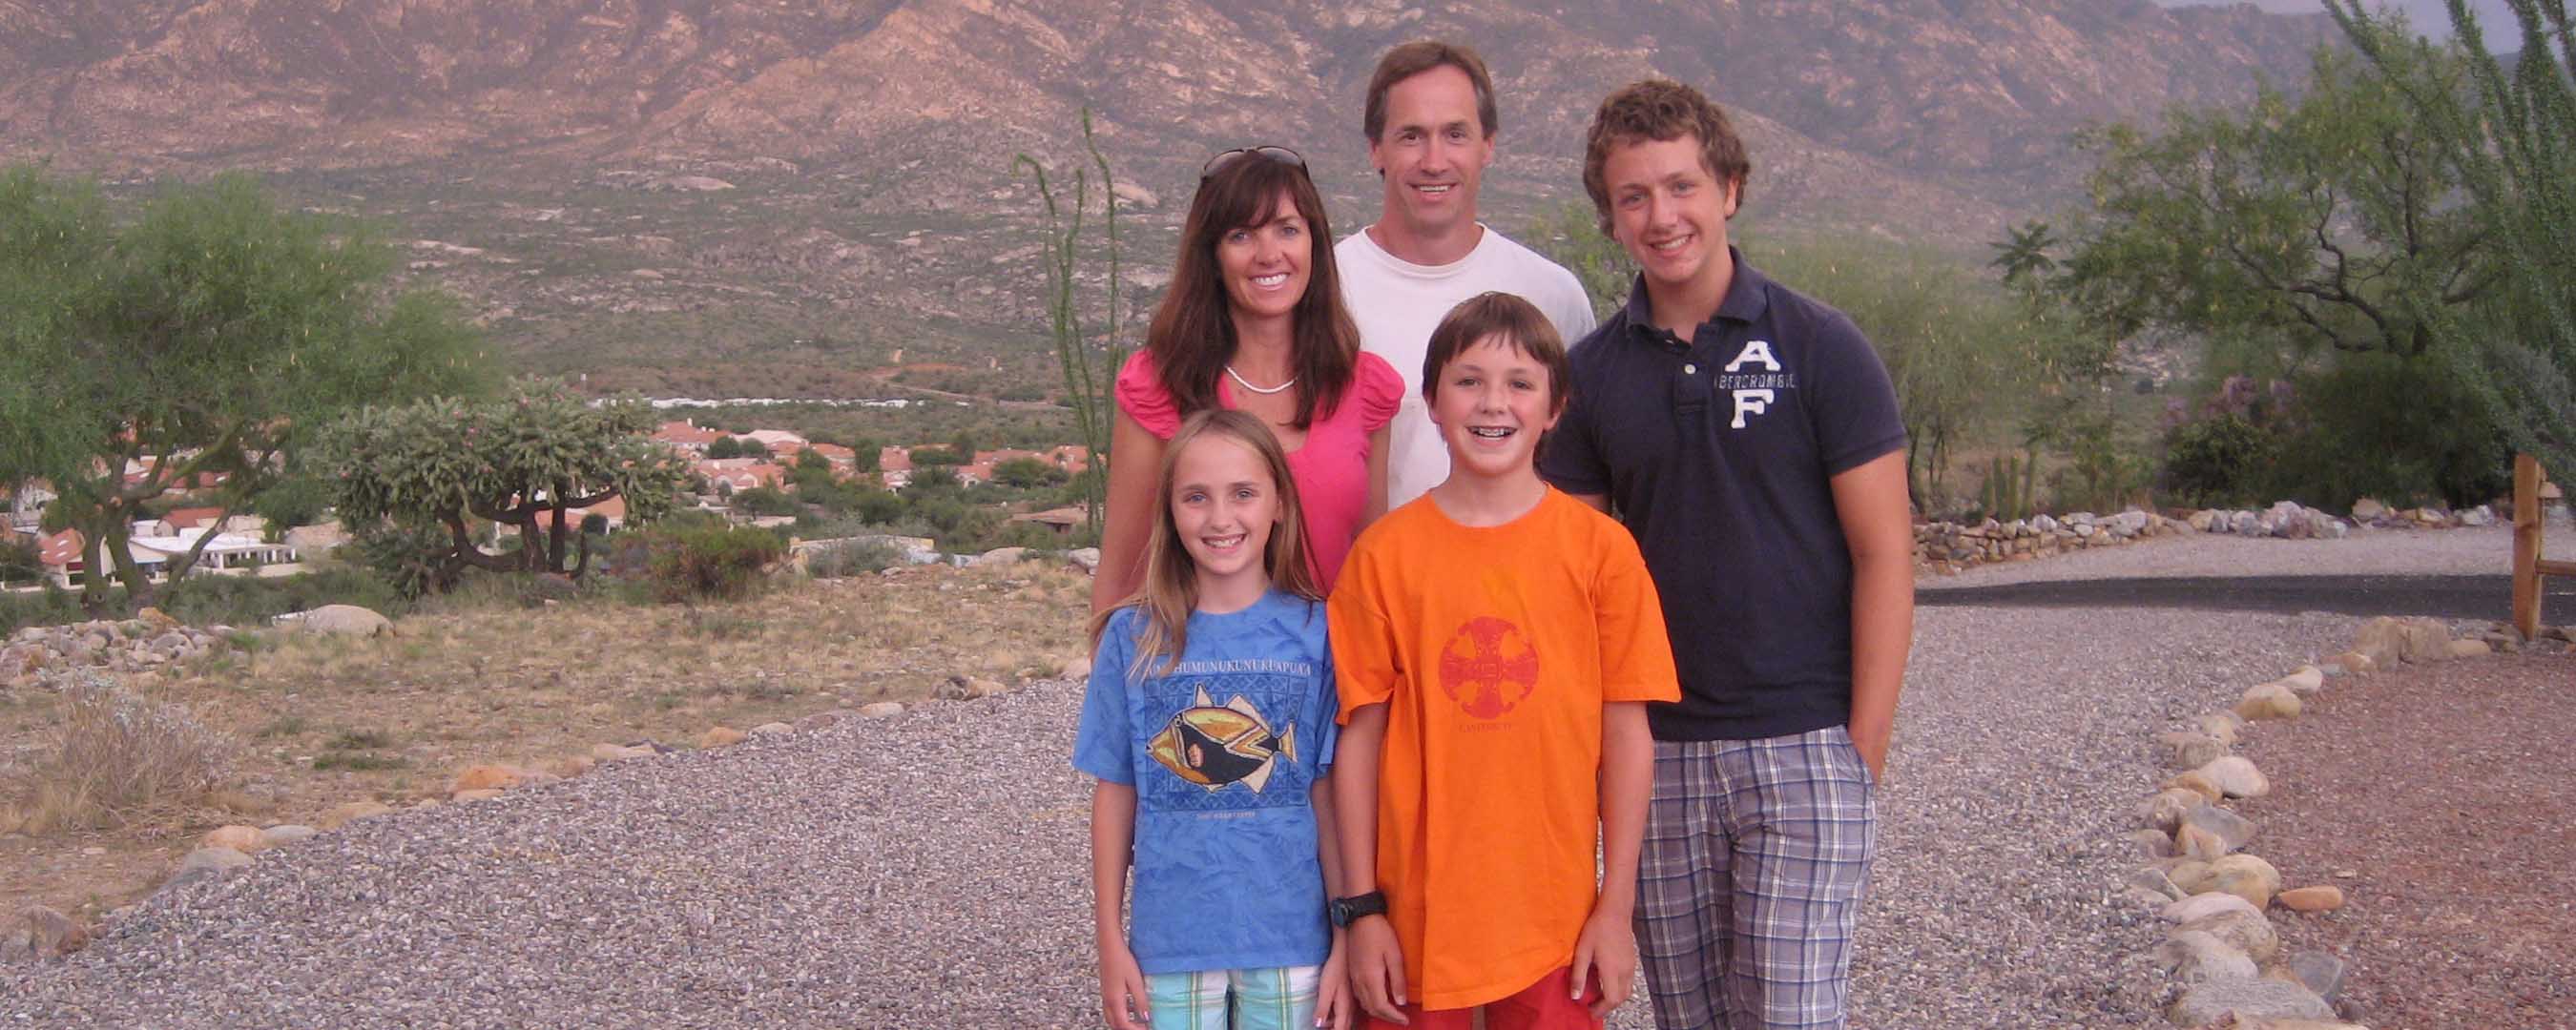 Tucson family photo